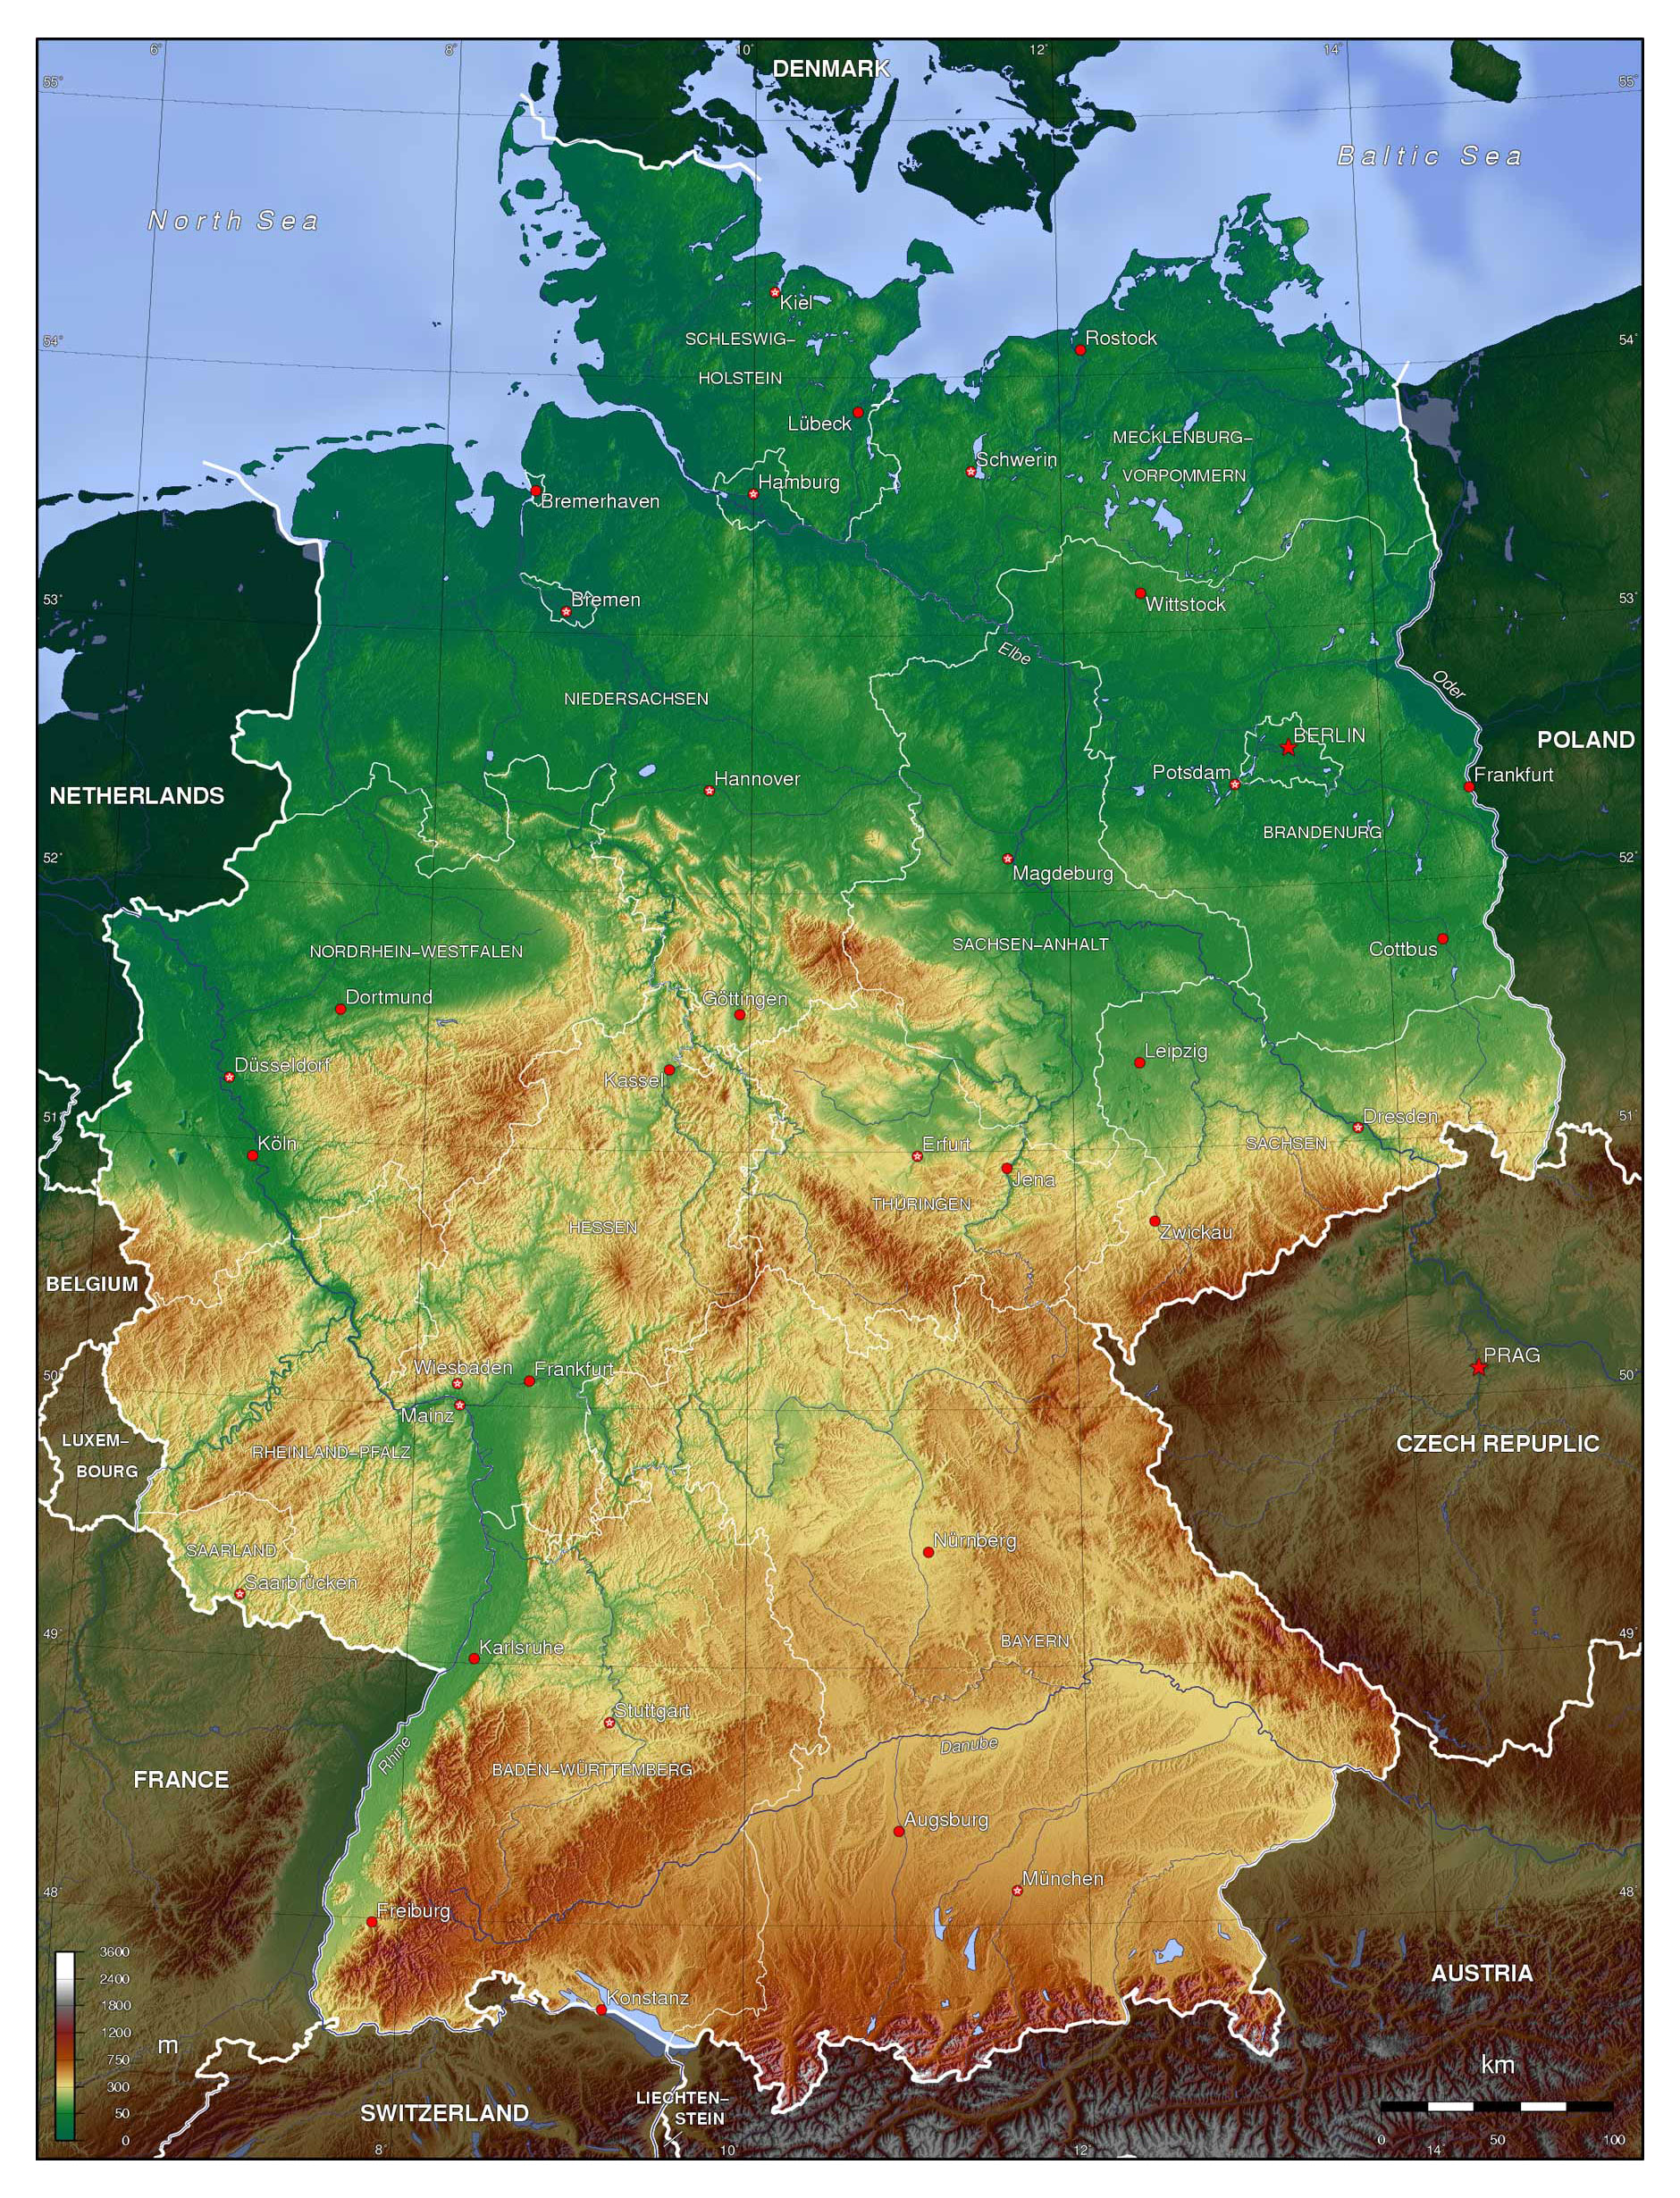 Bản đồ nước Đức 2024 - CHLB Đức: Những ngày tới, Đức sẽ trở thành một trong những nước phát triển hàng đầu thế giới và cũng tiếp tục là điểm đến du lịch hấp dẫn. CHLB Đức đã cập nhật bản đồ nước Đức năm 2024 để giúp bạn dễ dàng tìm hiểu về các vùng đất tuyệt vời này. Hãy bắt đầu chuyến phiêu lưu của bạn tại nước Đức!